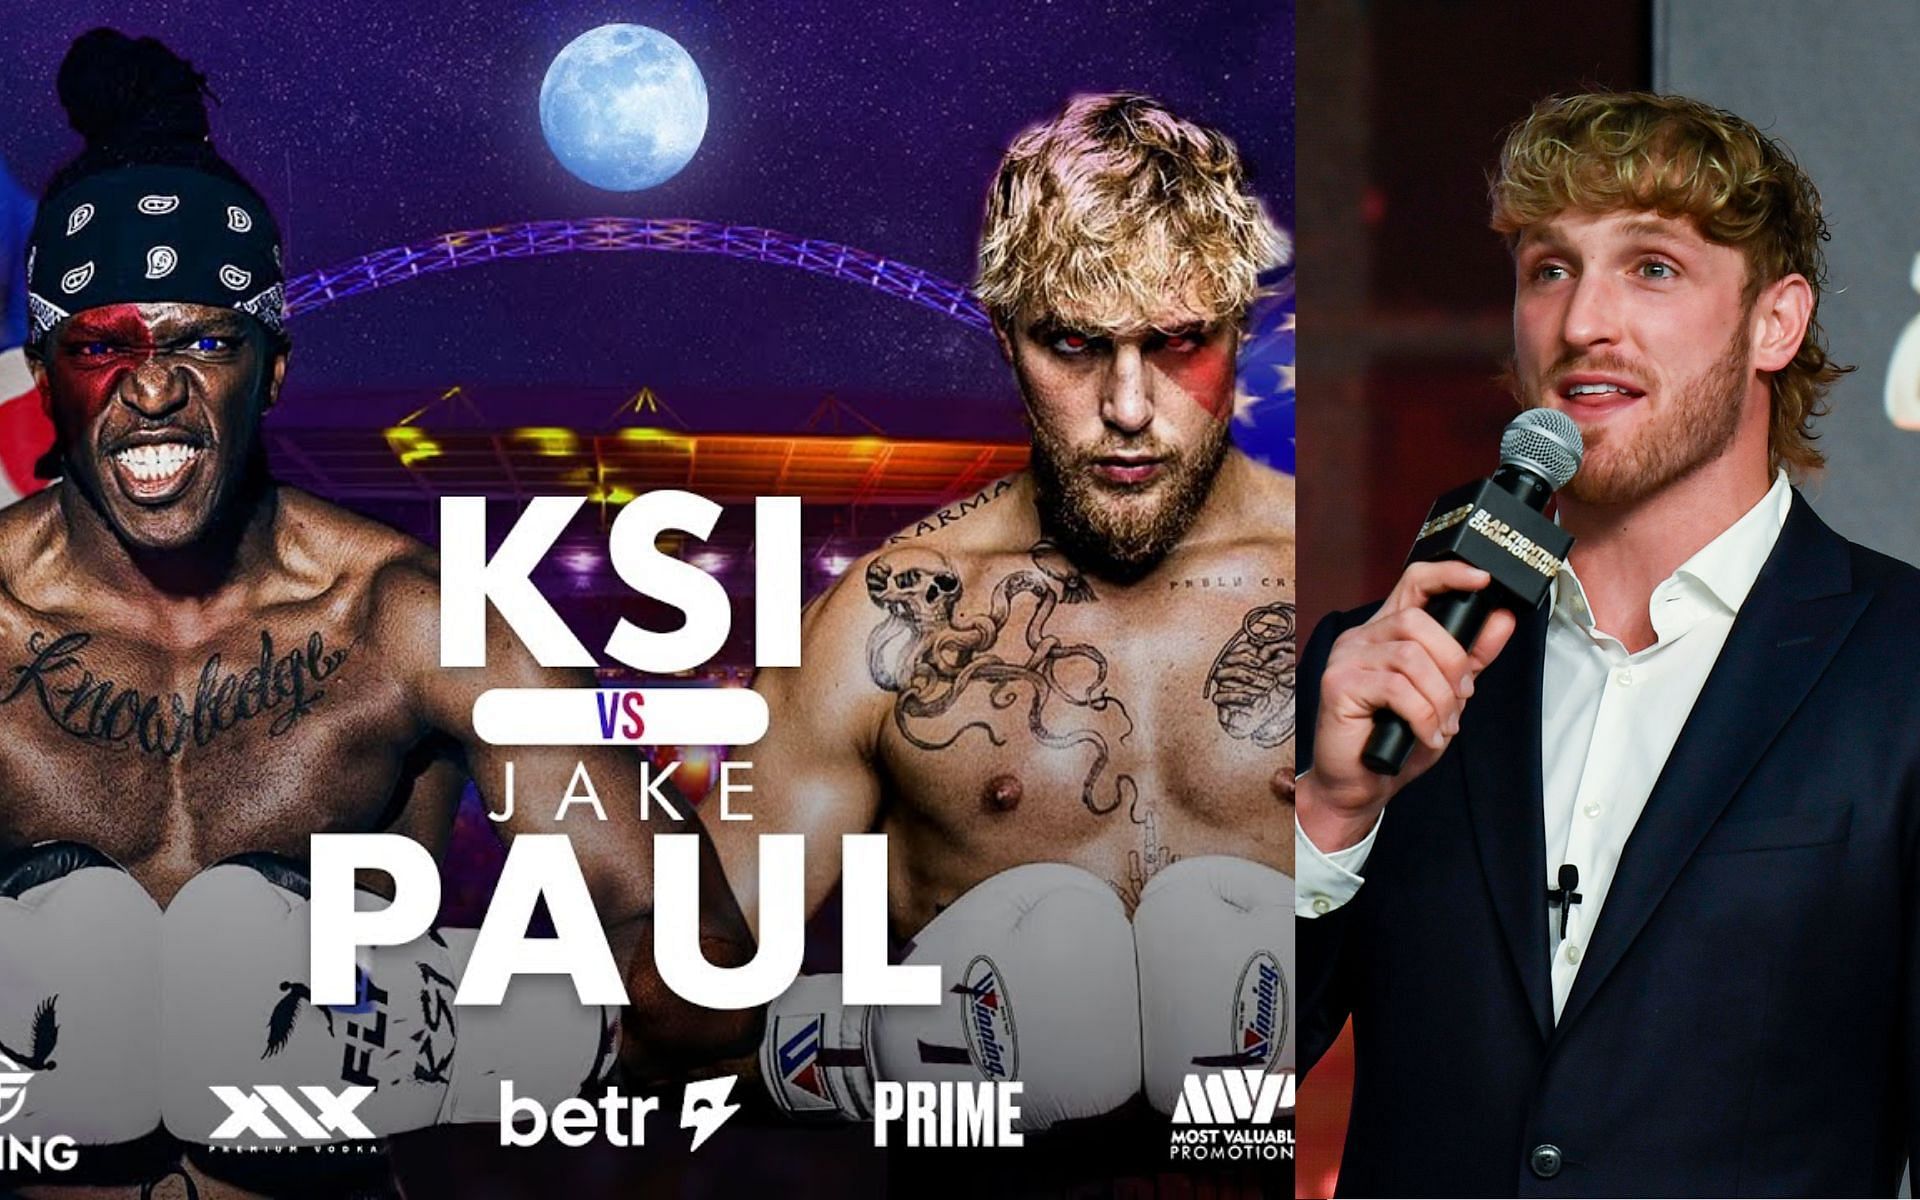 KSI vs Jake Paul poster (left) and Logan Paul (right). [Images courtesy: left image from YouTube Bim and right image from Getty Images]